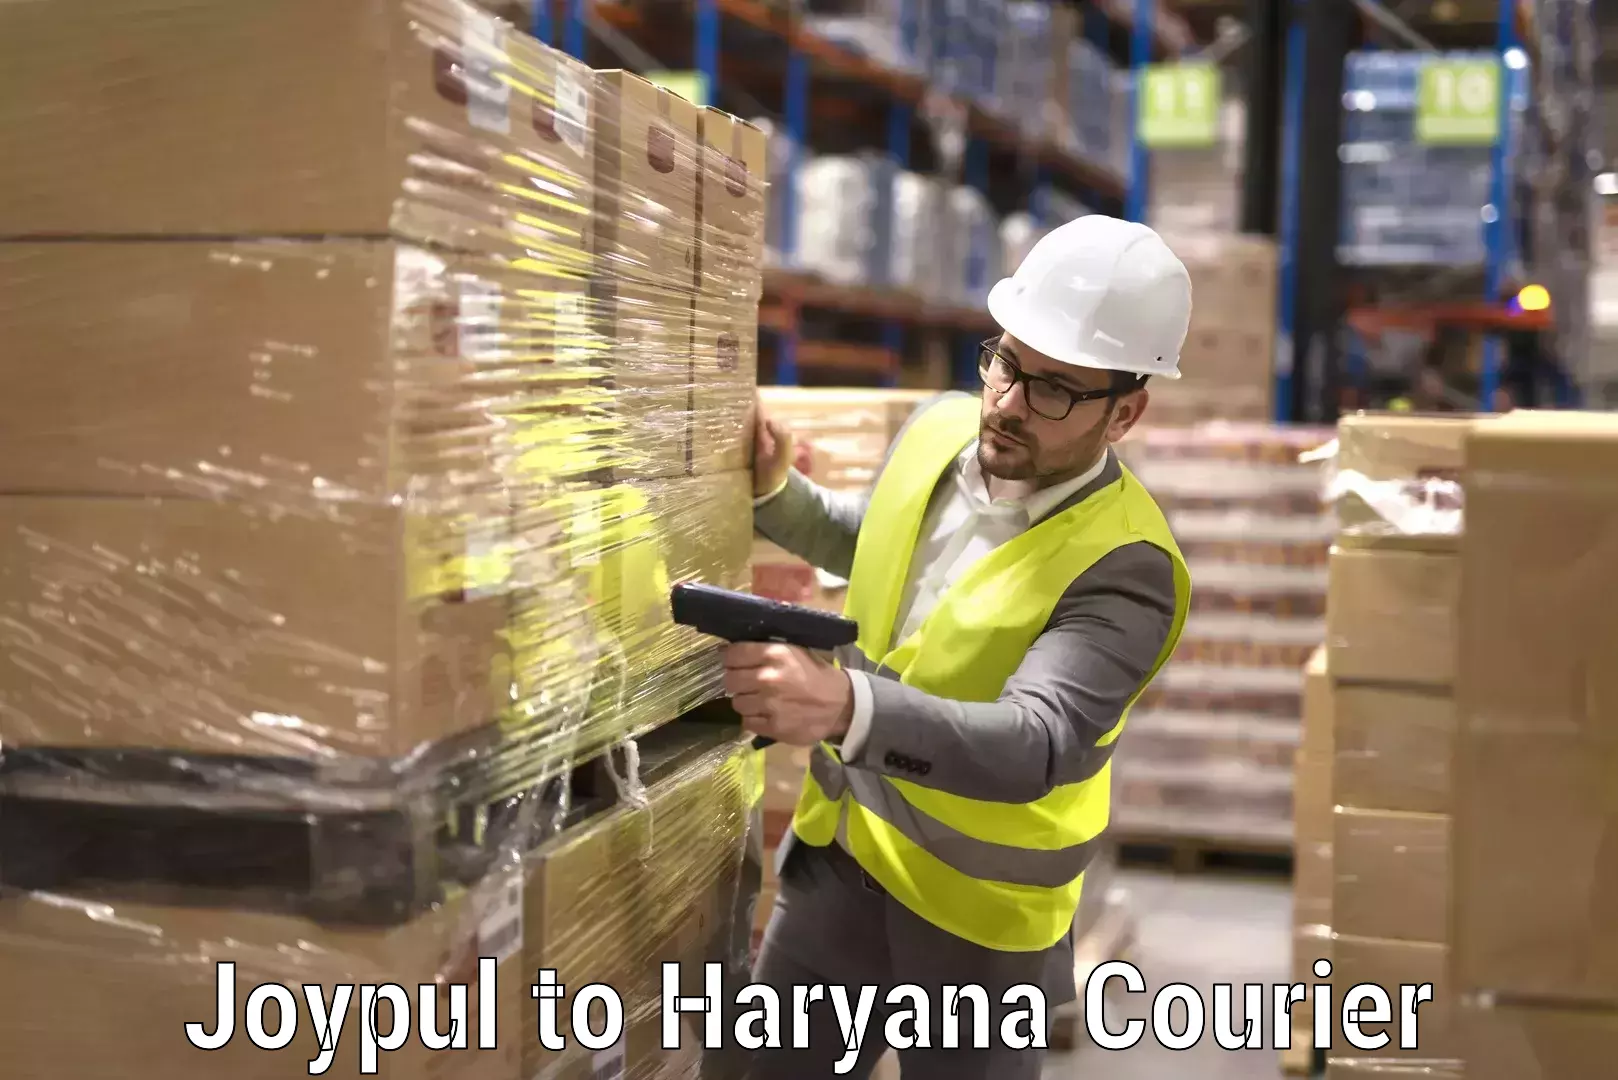 Trusted moving company Joypul to Haryana